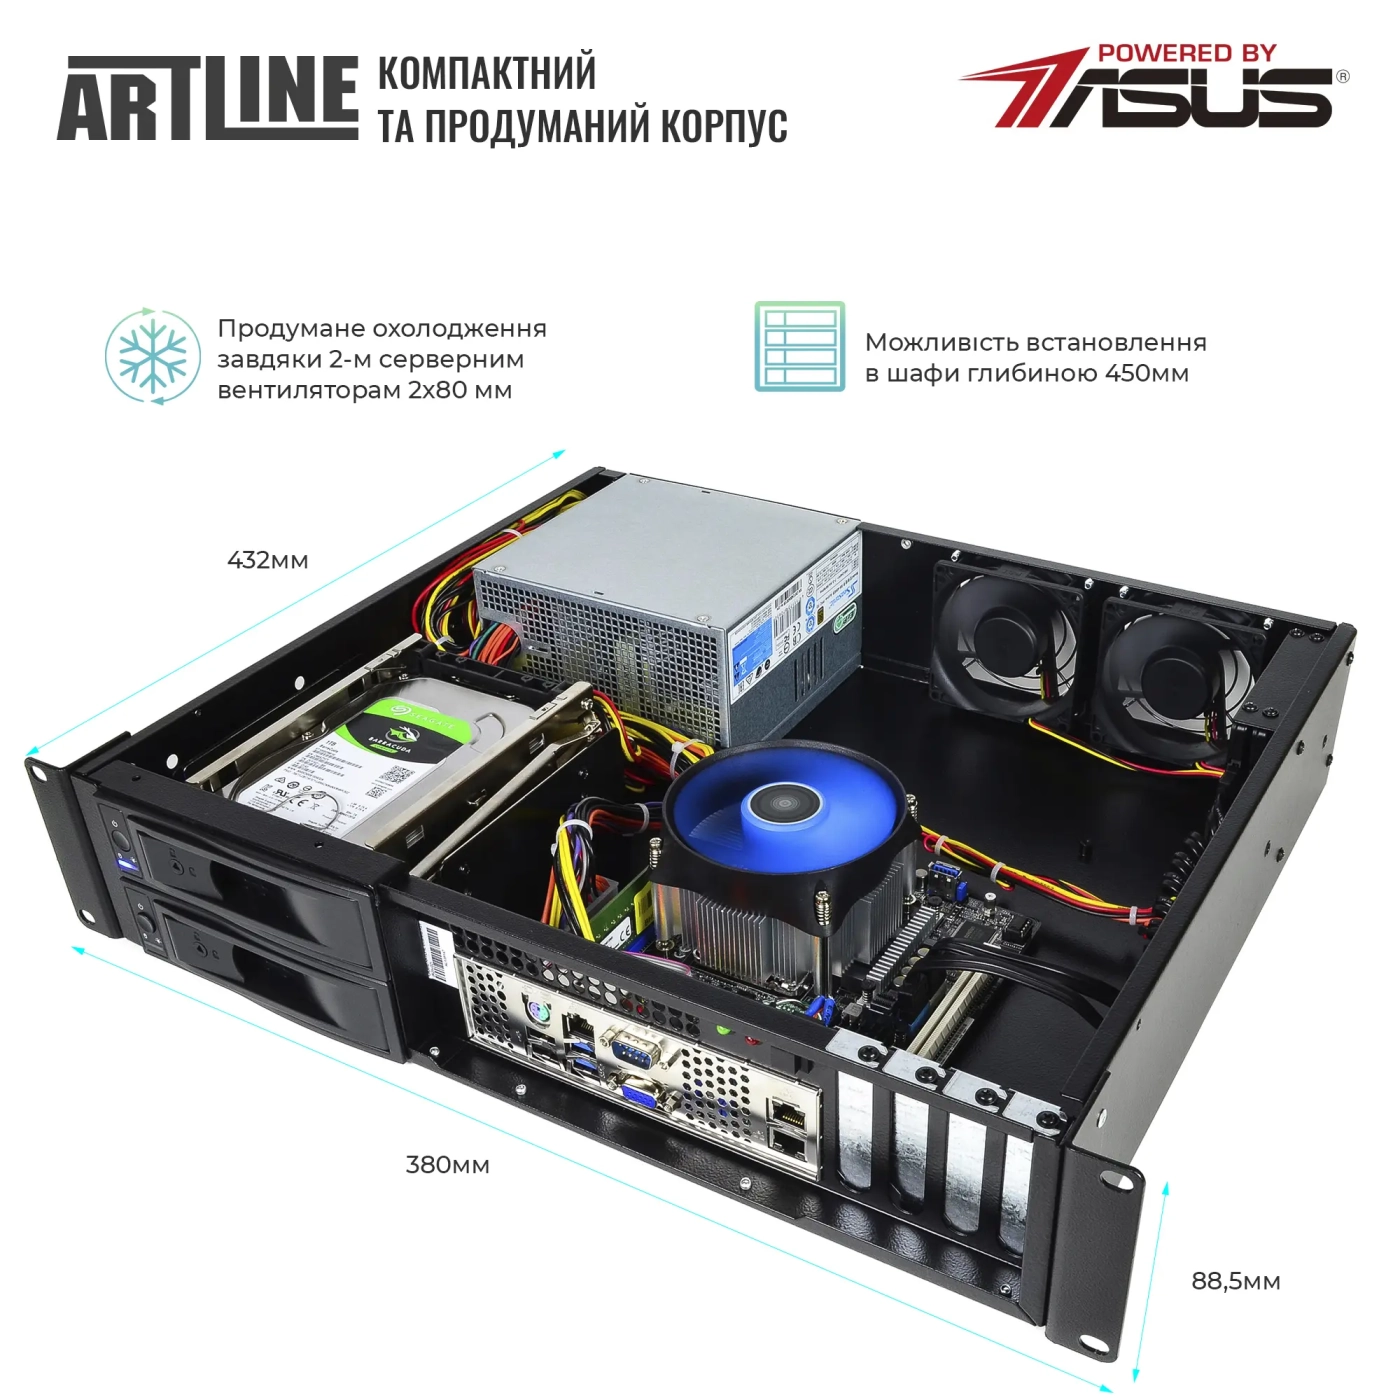 Купить Сервер ARTLINE Business R35 (R35v51) - фото 3